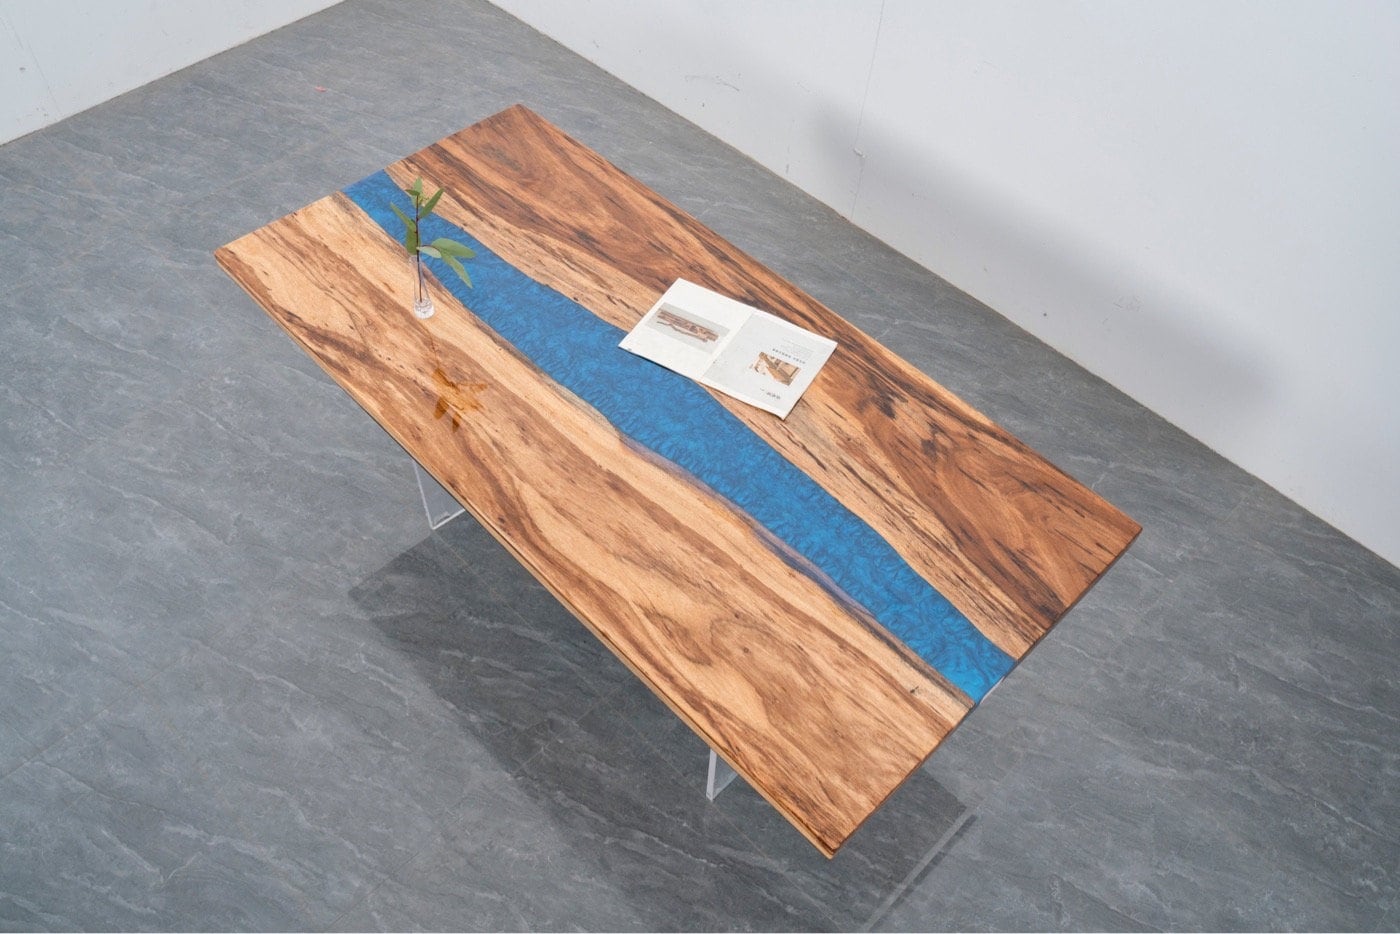 ユニークなエポキシダイニングテーブル、エポキシキッチンダイニングテーブル、リバーベリノワールウッドエポキシテーブル、天然木エポキシテーブル